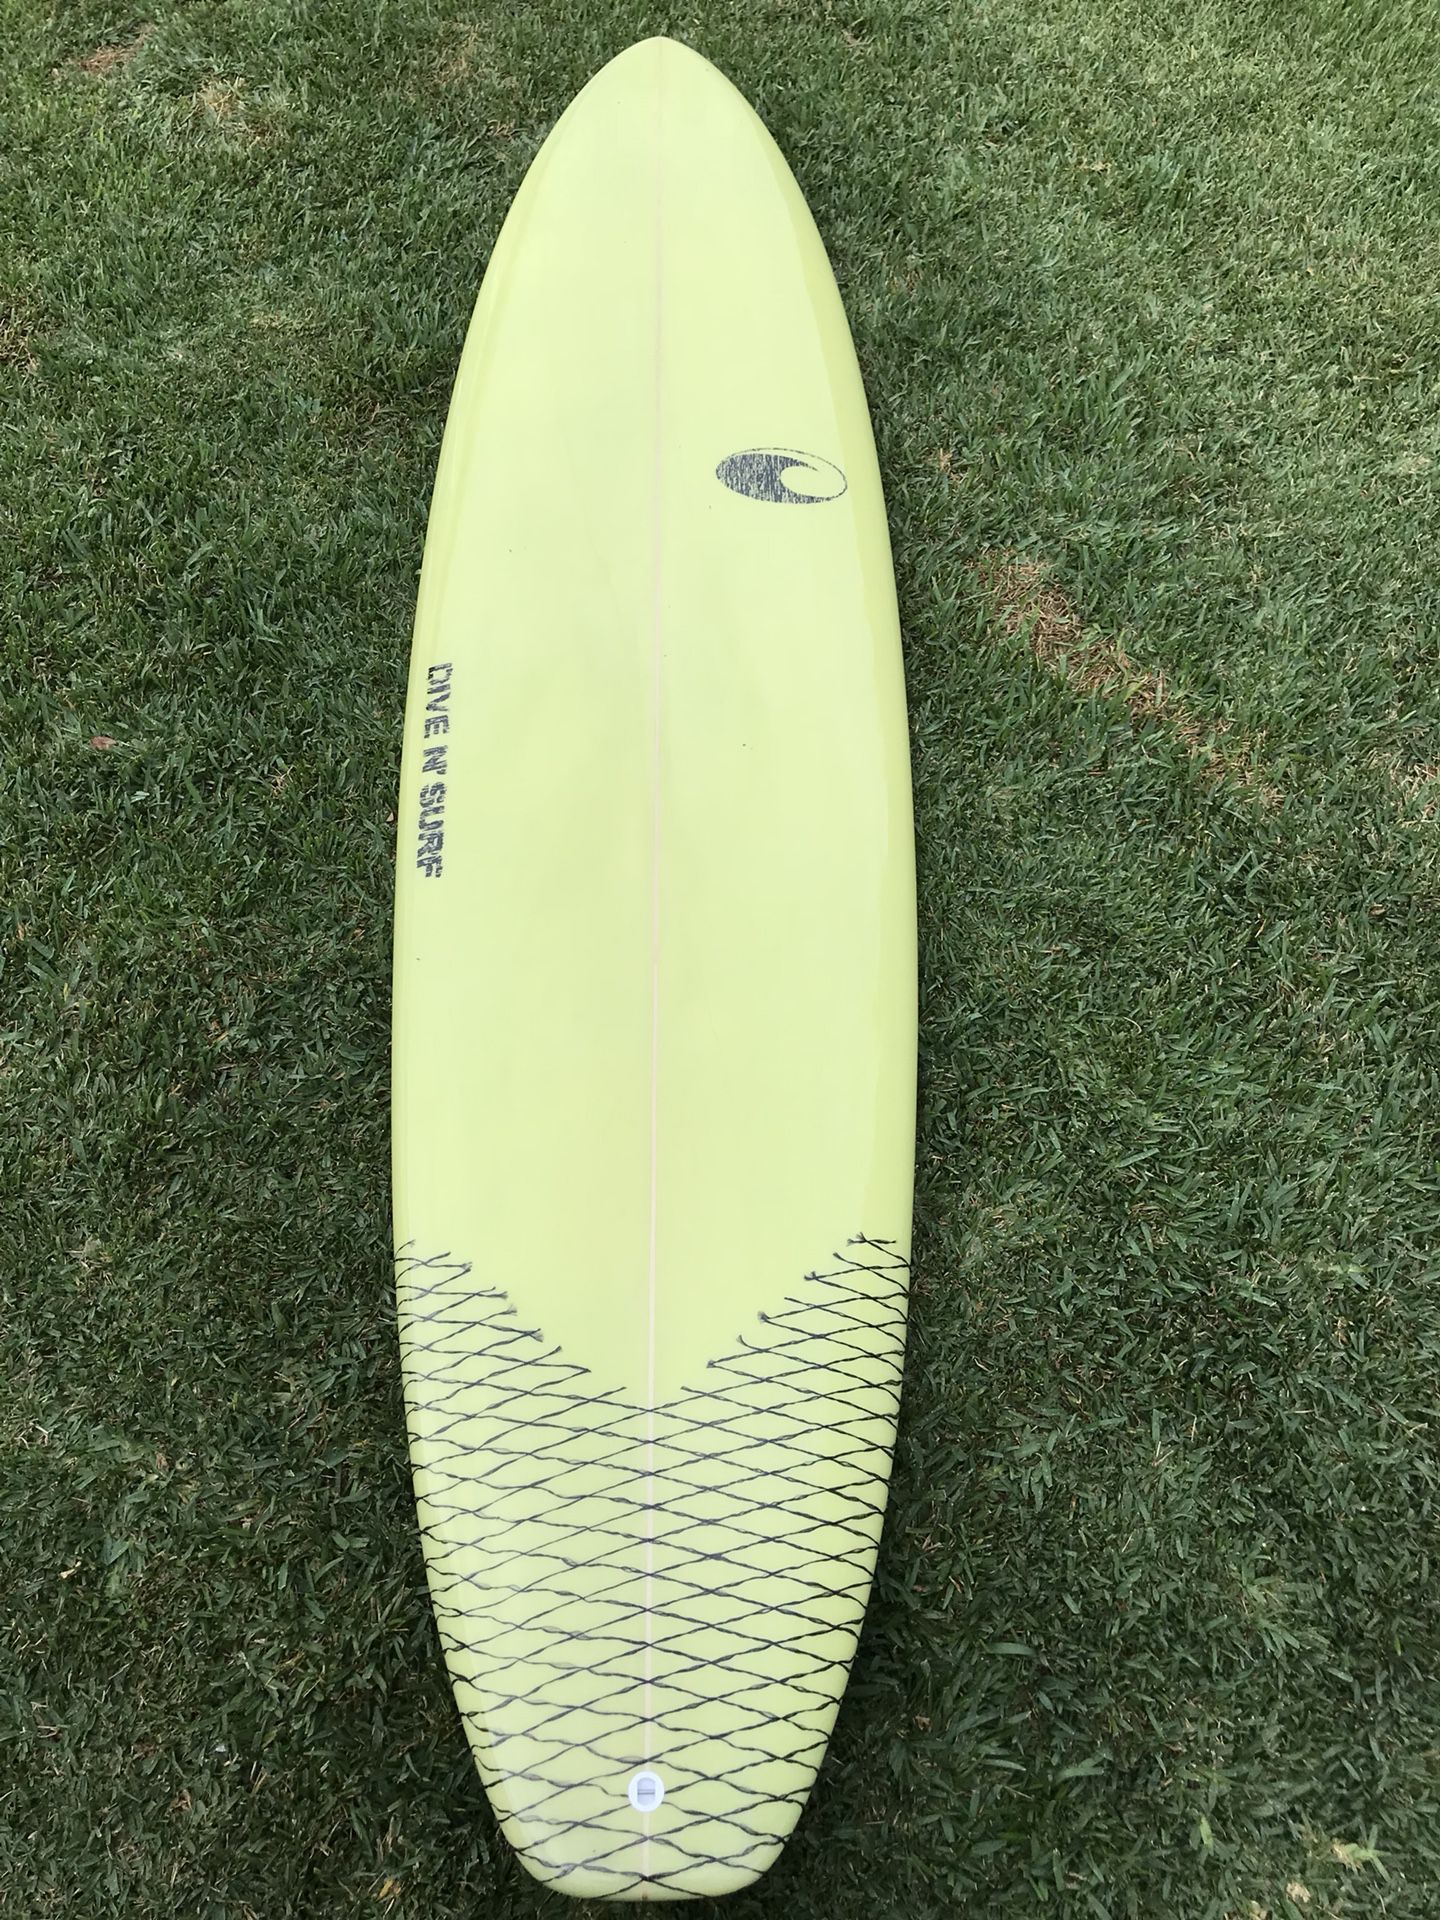 8”0 NEW longboard / funboard Surfboard brand new